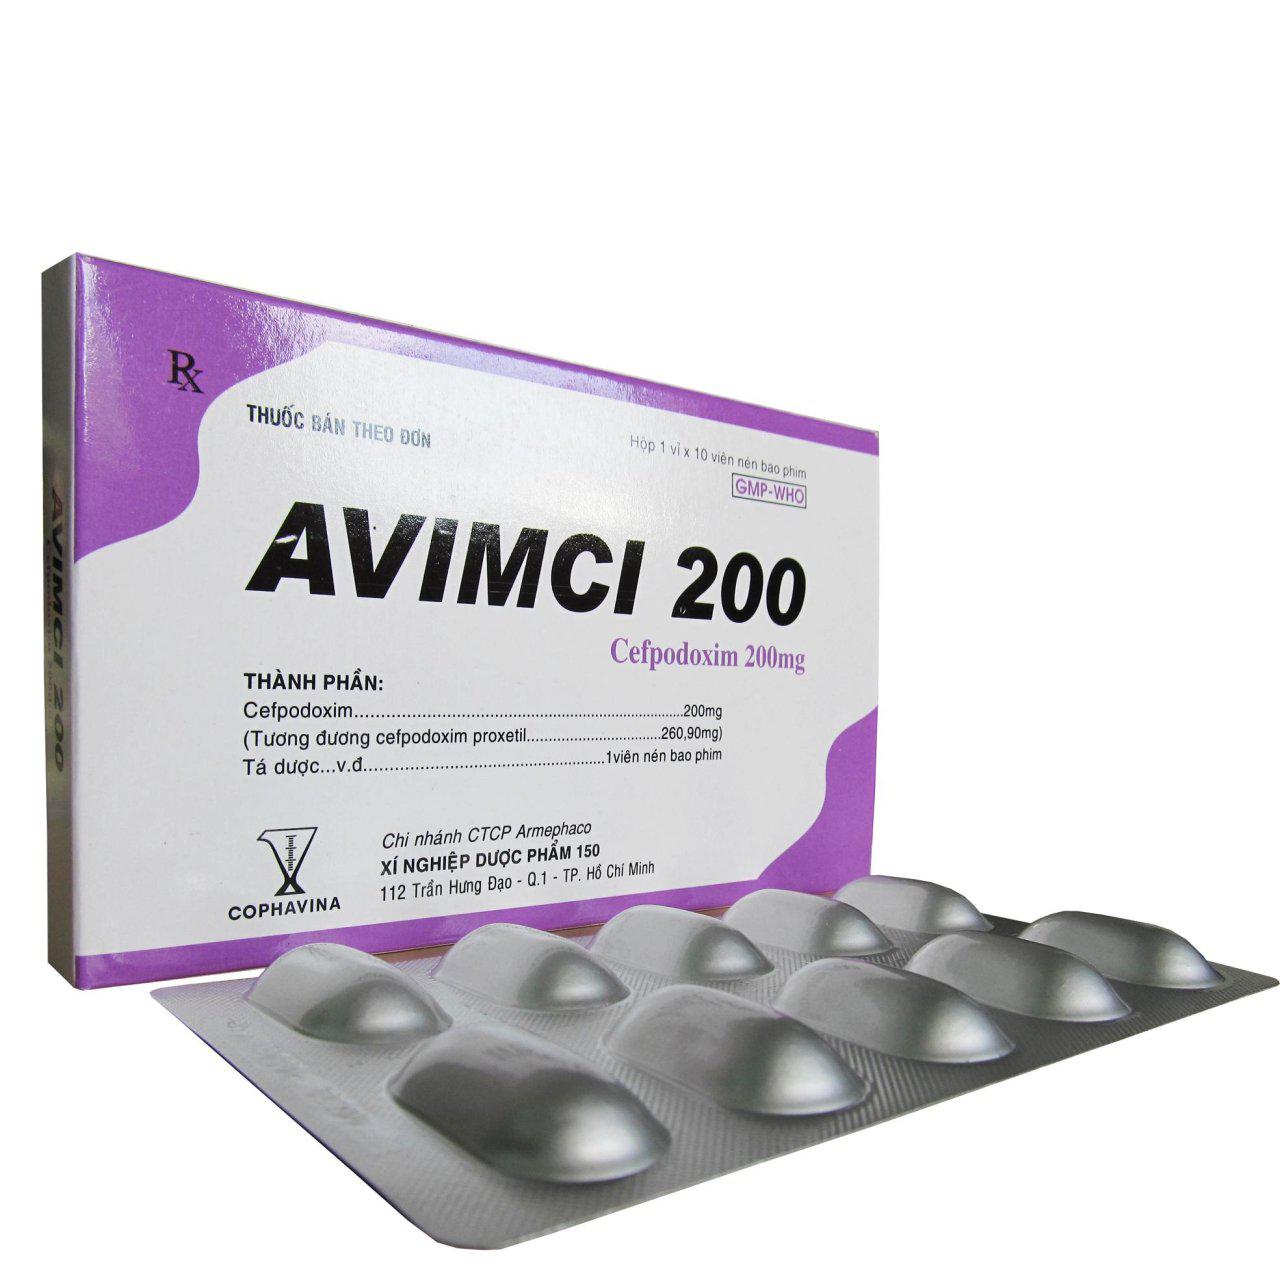 Avimci 200 (Cefpodoxim) Armephaco (H/10v)